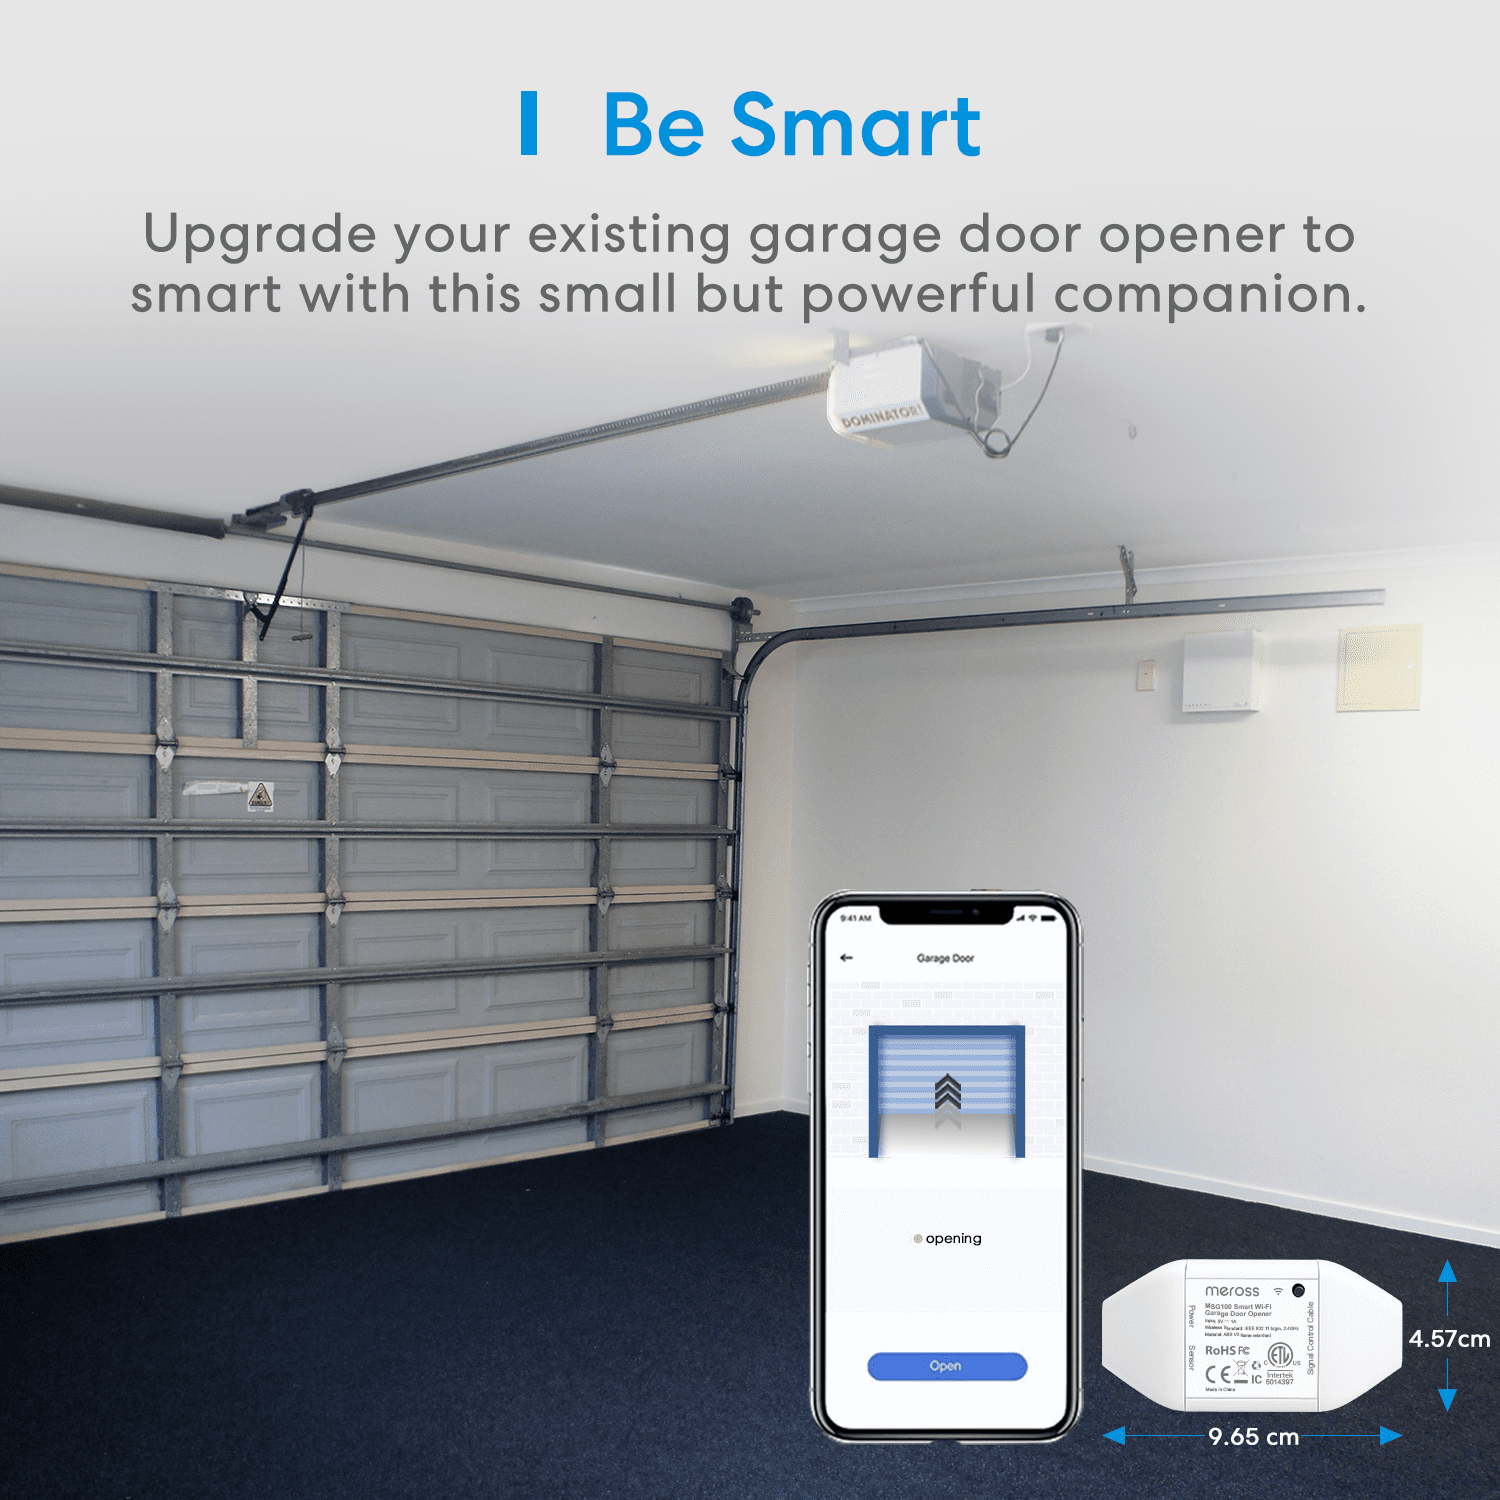 Meross Smart WiFi Garage Door Opener Remote, App Control, Works with Alexa, Google Assistant and SmartThings, No Hub Needed - 3